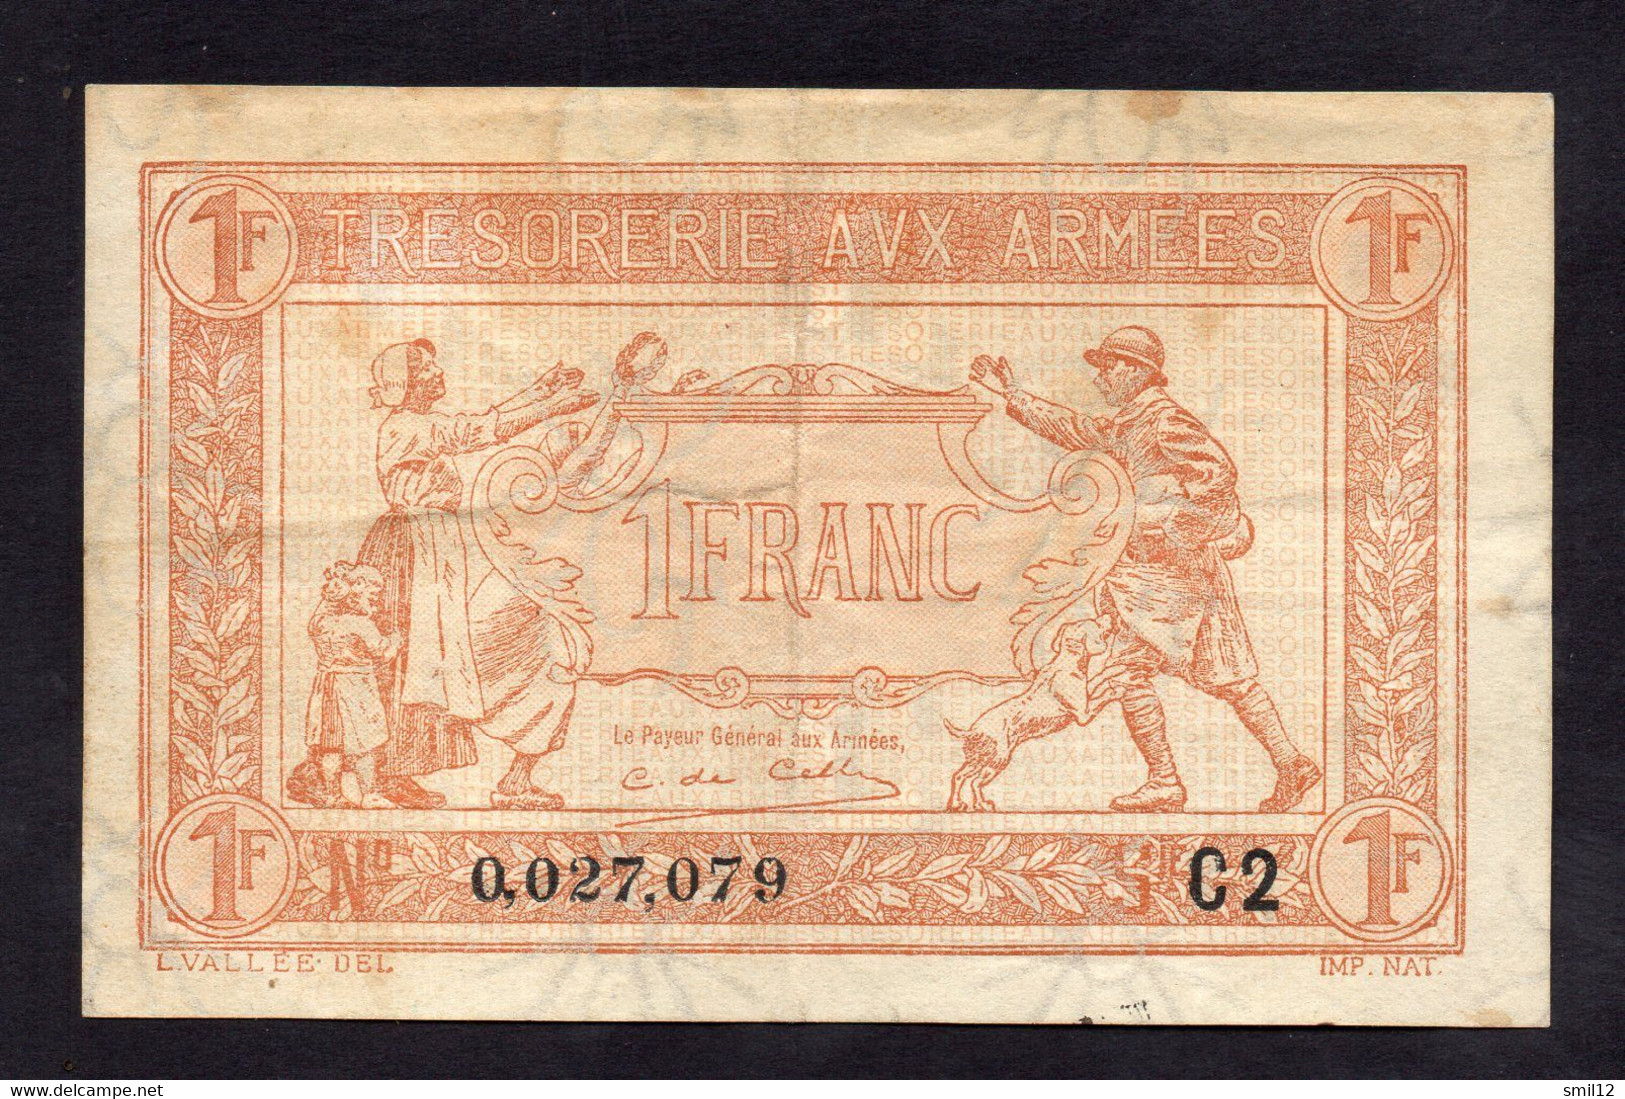 Trésorerie Aux Armées - 1 Franc - Lettre C2 - 1917-1919 Army Treasury